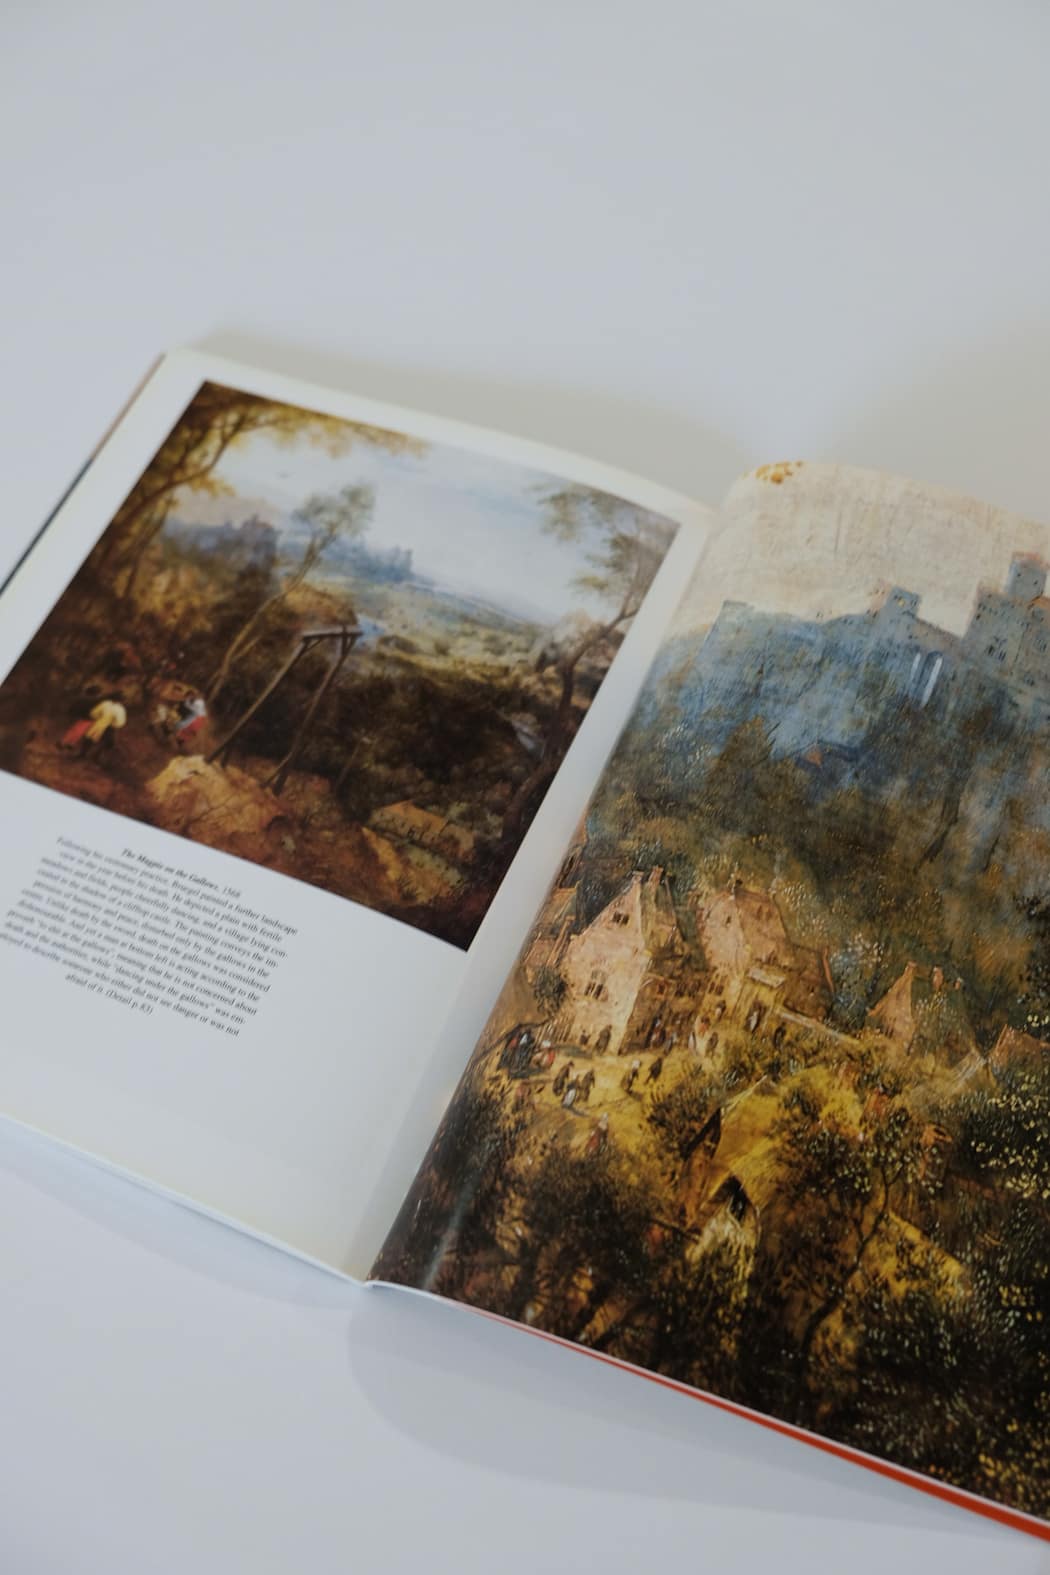 Bruegel: The Complete Paintings